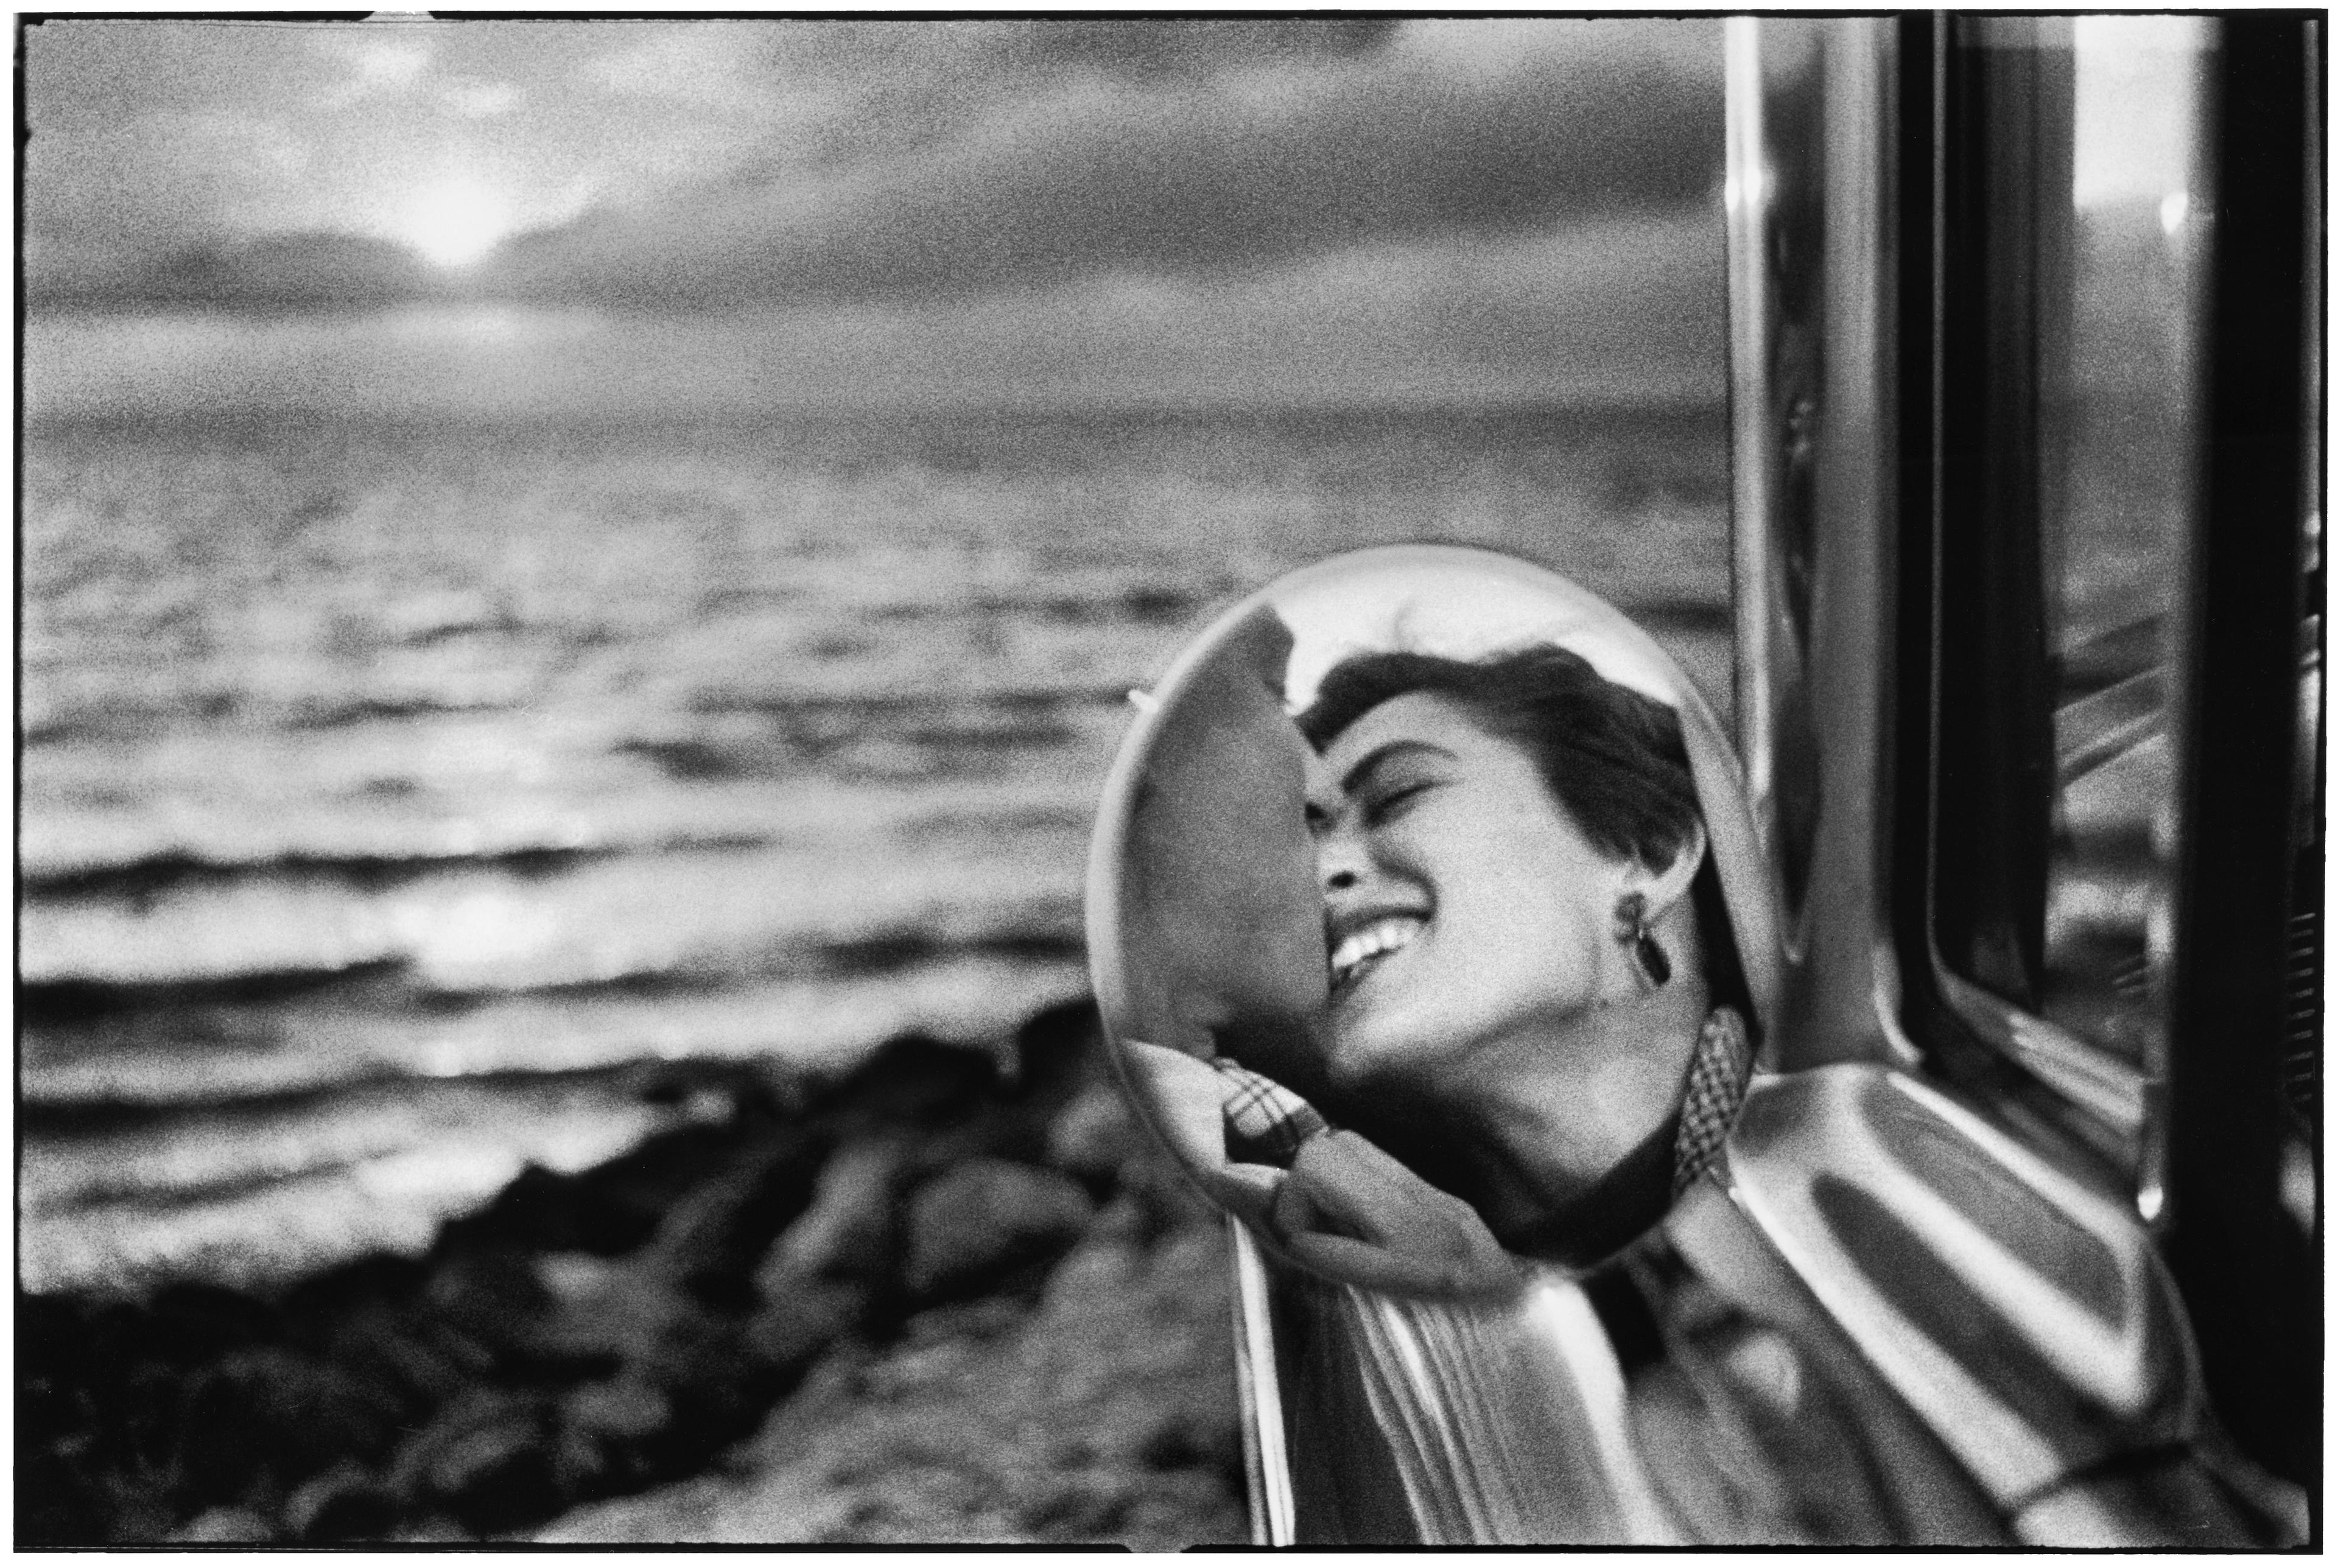 California, USA, 1955 ©️ Elliott Erwitt / MAGNUM PHOTOS